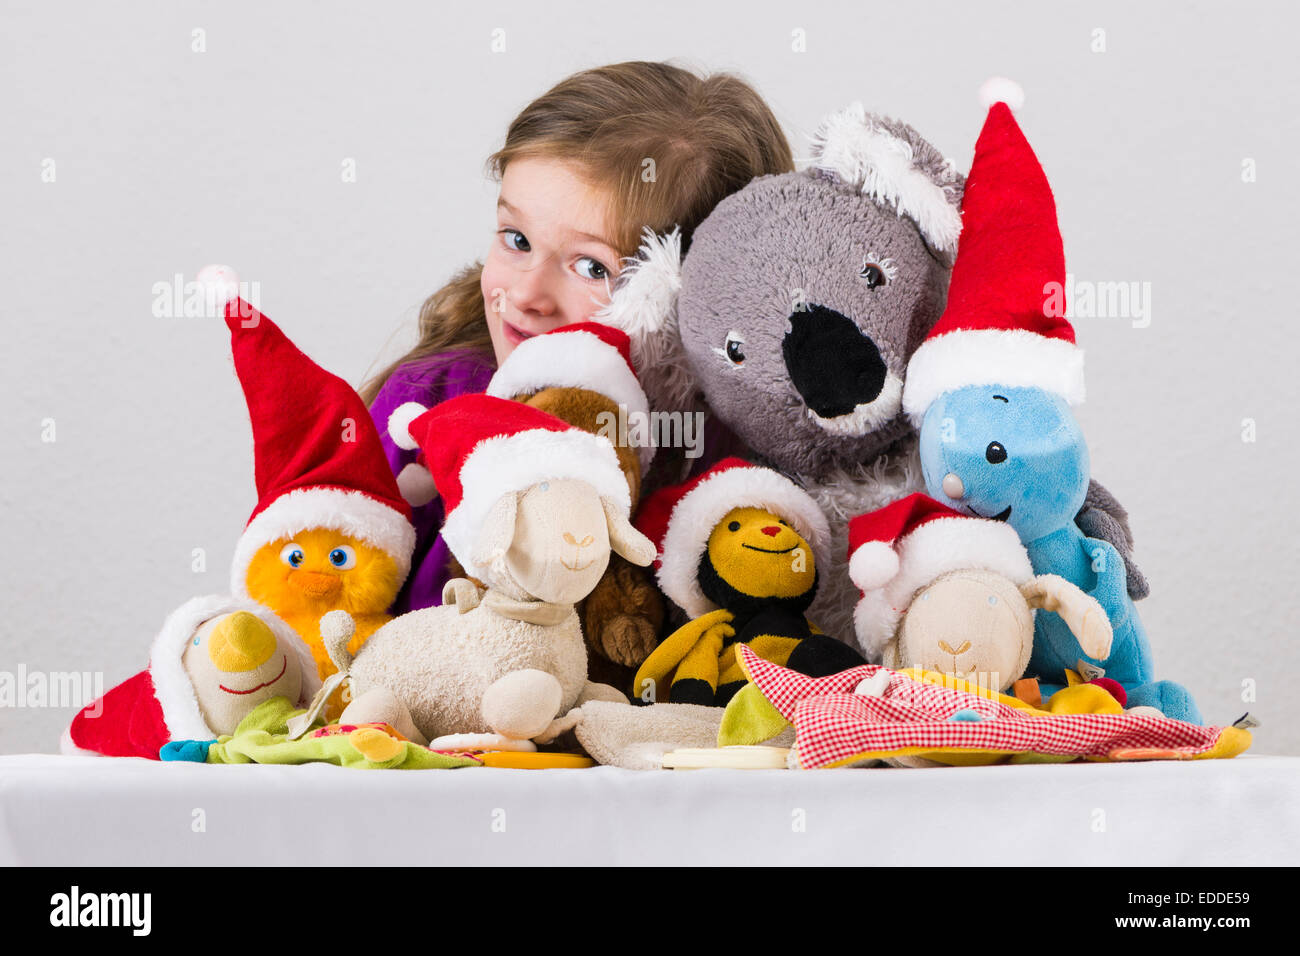 Fille, 3 ans, avec des jouets en peluche portant des chapeaux de Père Noël Banque D'Images